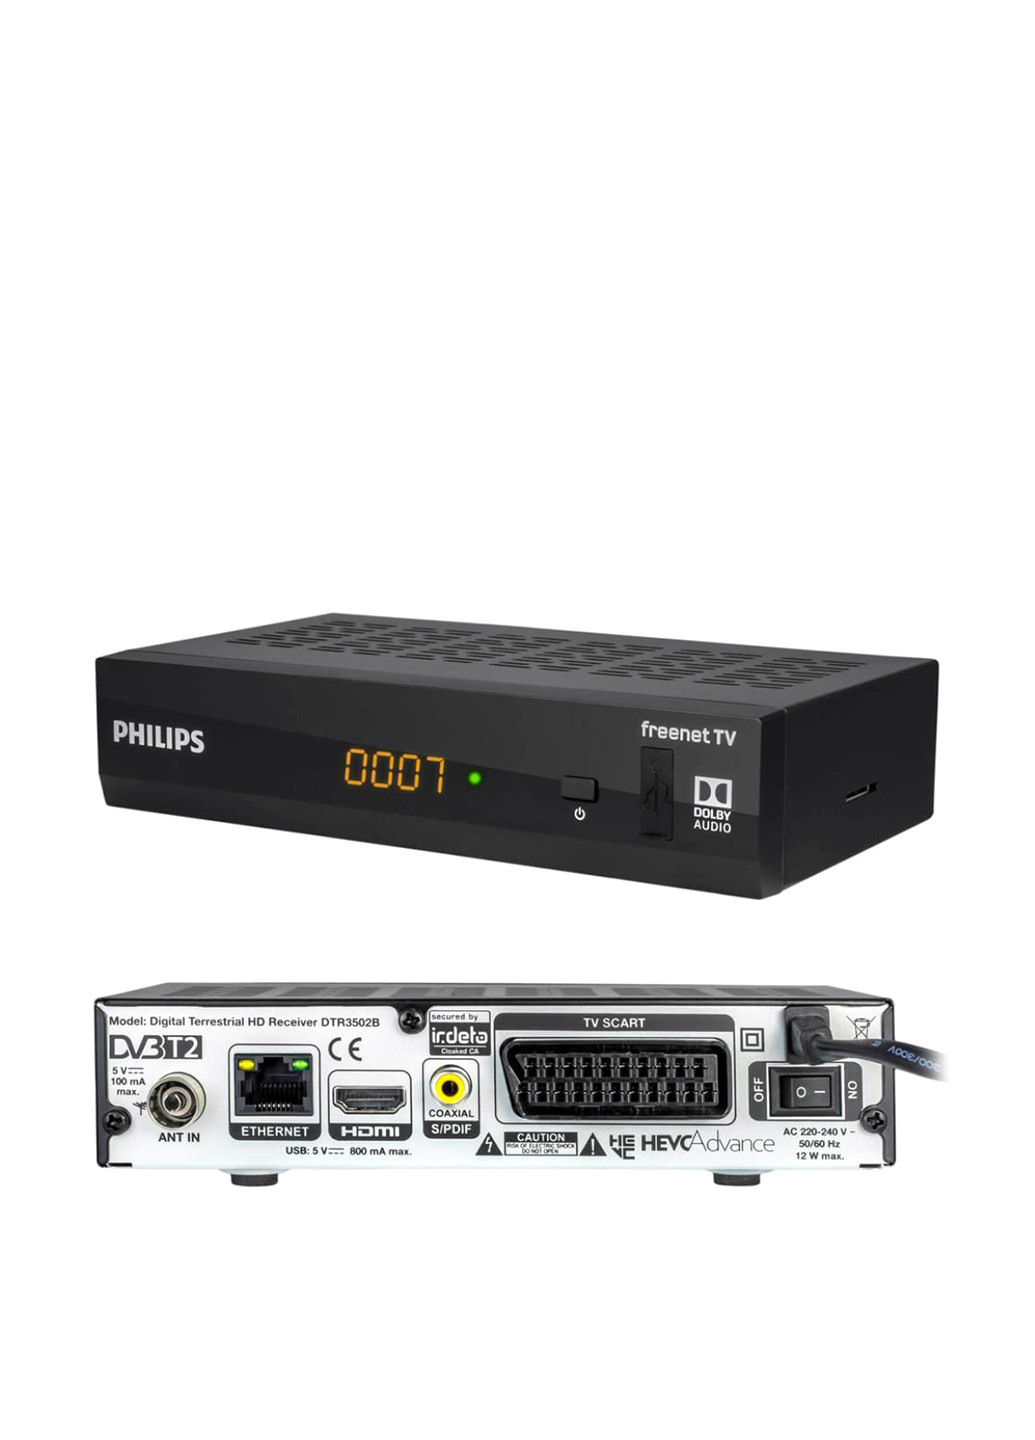 Телевизионная приставка Ethernet (RJ-45) DTR3502B с антенной, 17,5х9 см Philips чёрные